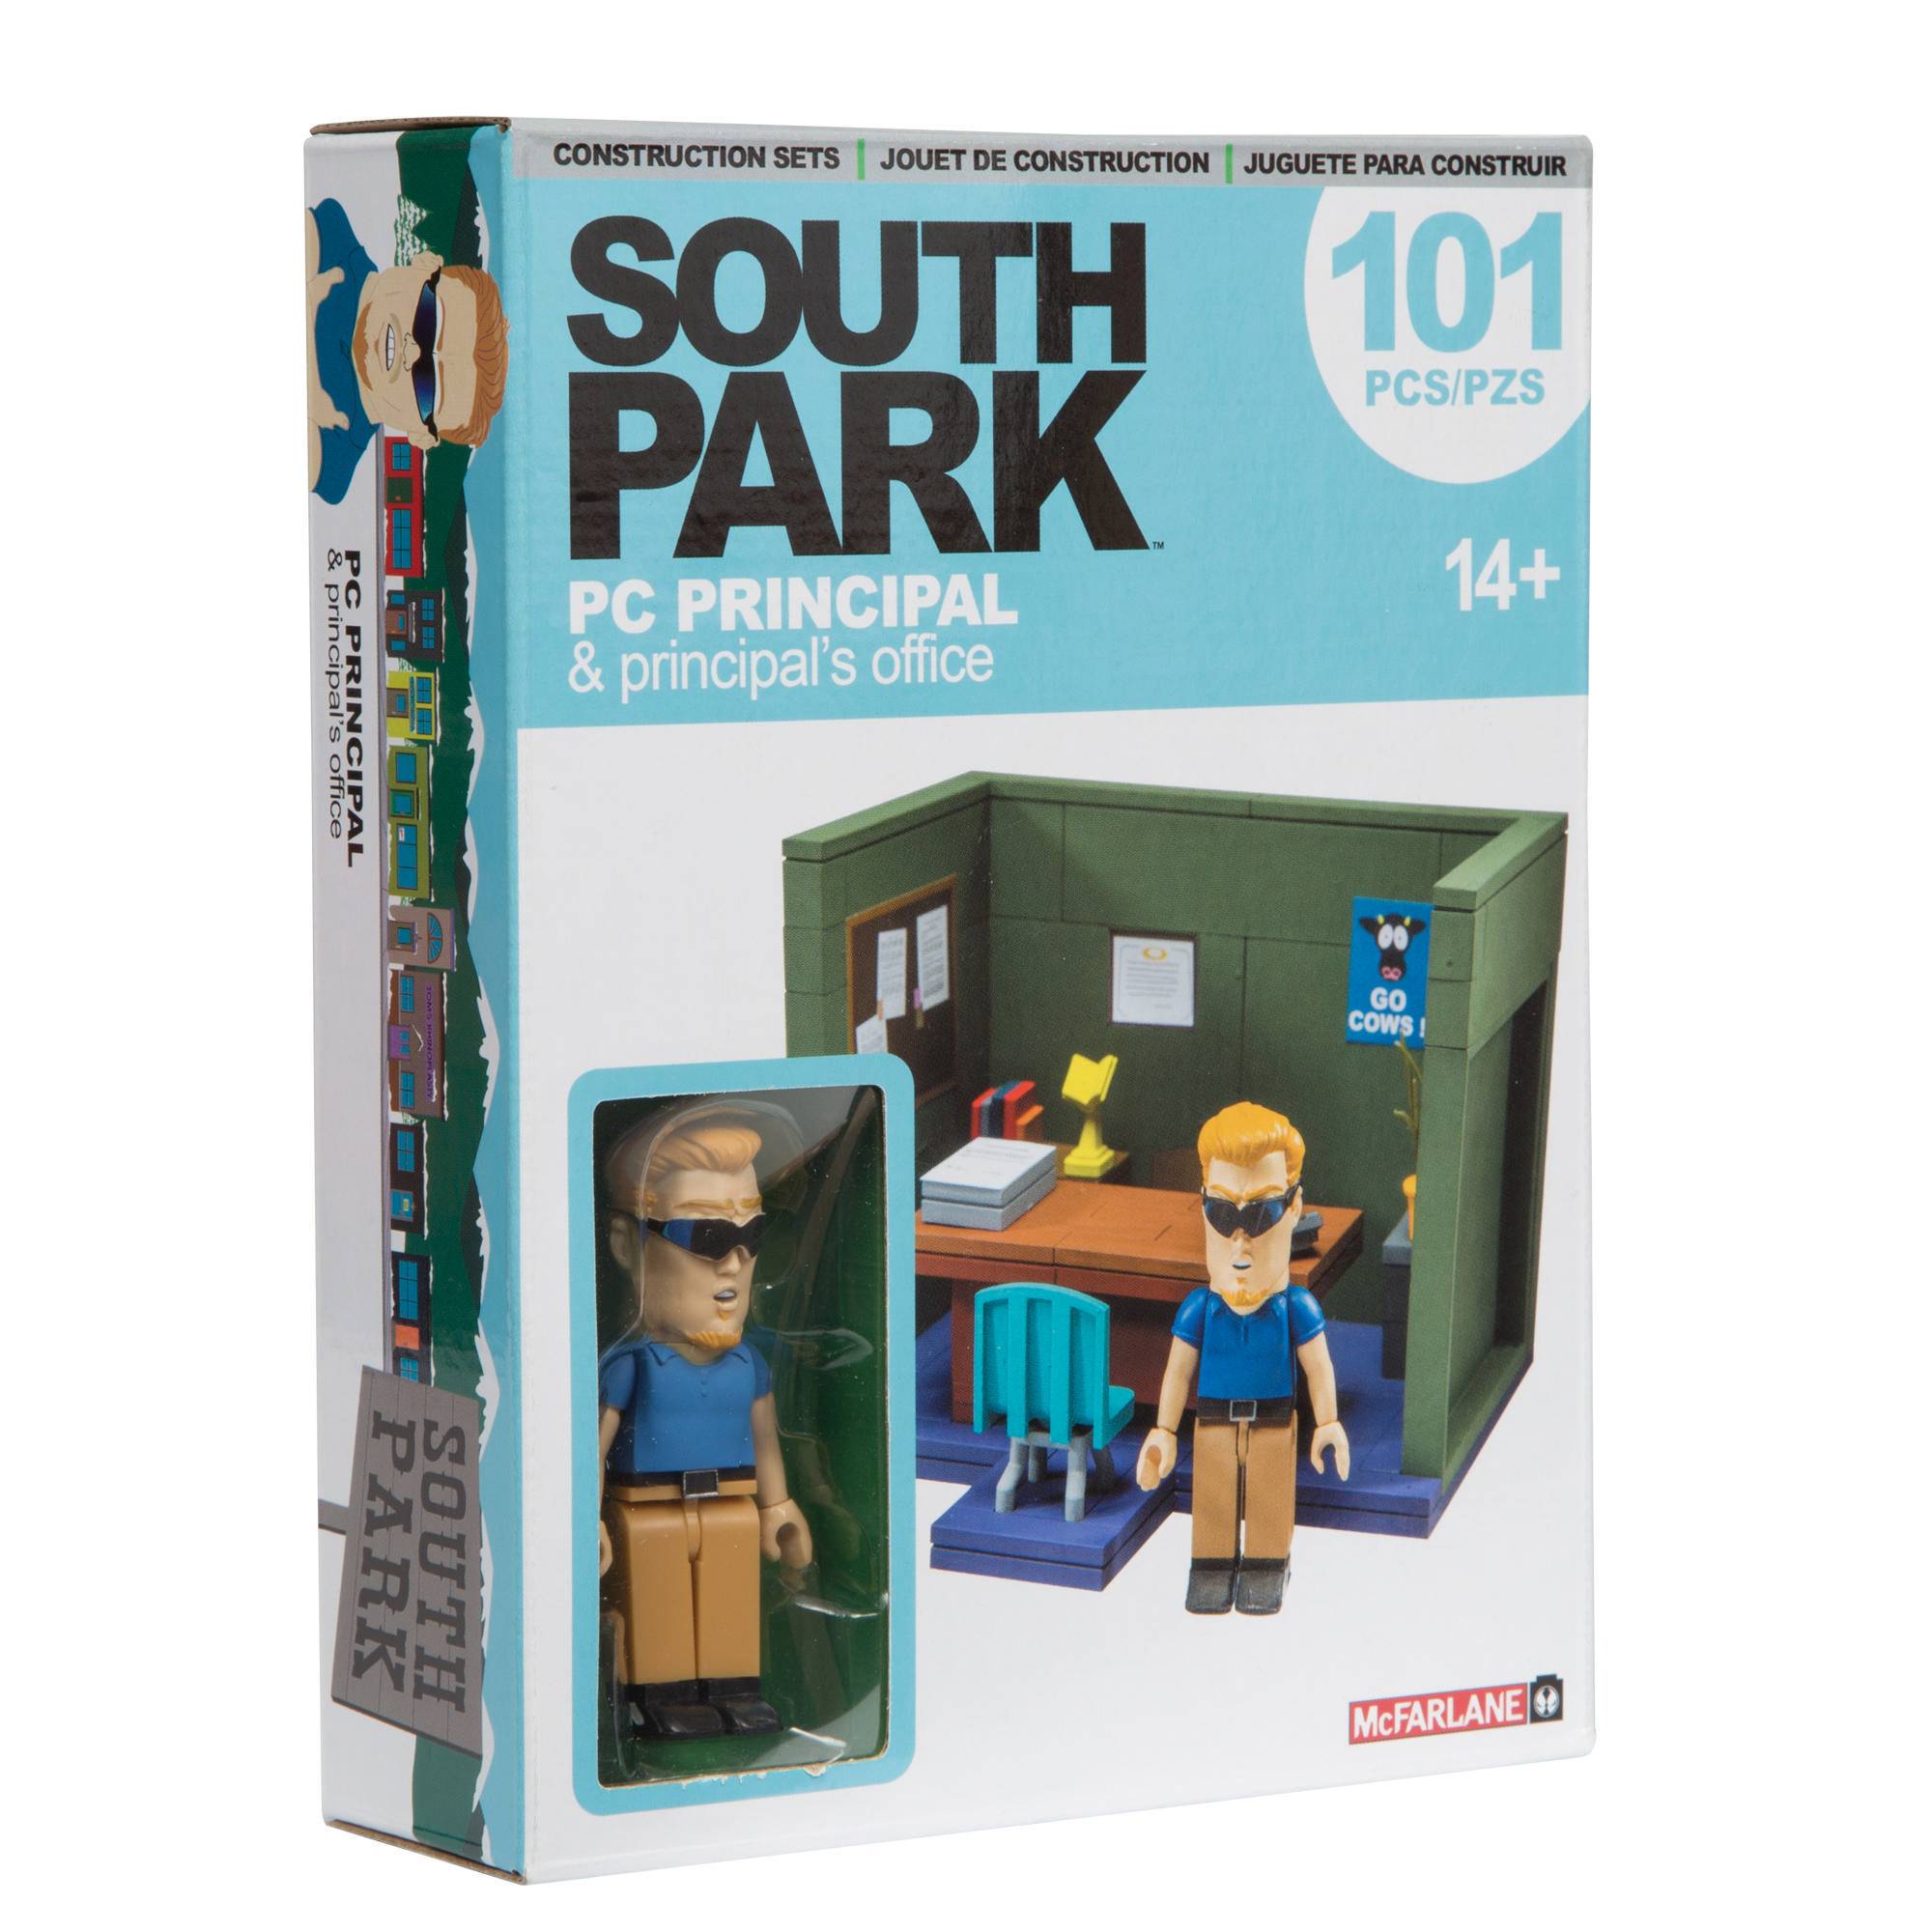 McFarlane Toys South Park The Classroom Large Construction Set 3 Figures 259 Pcs for sale online